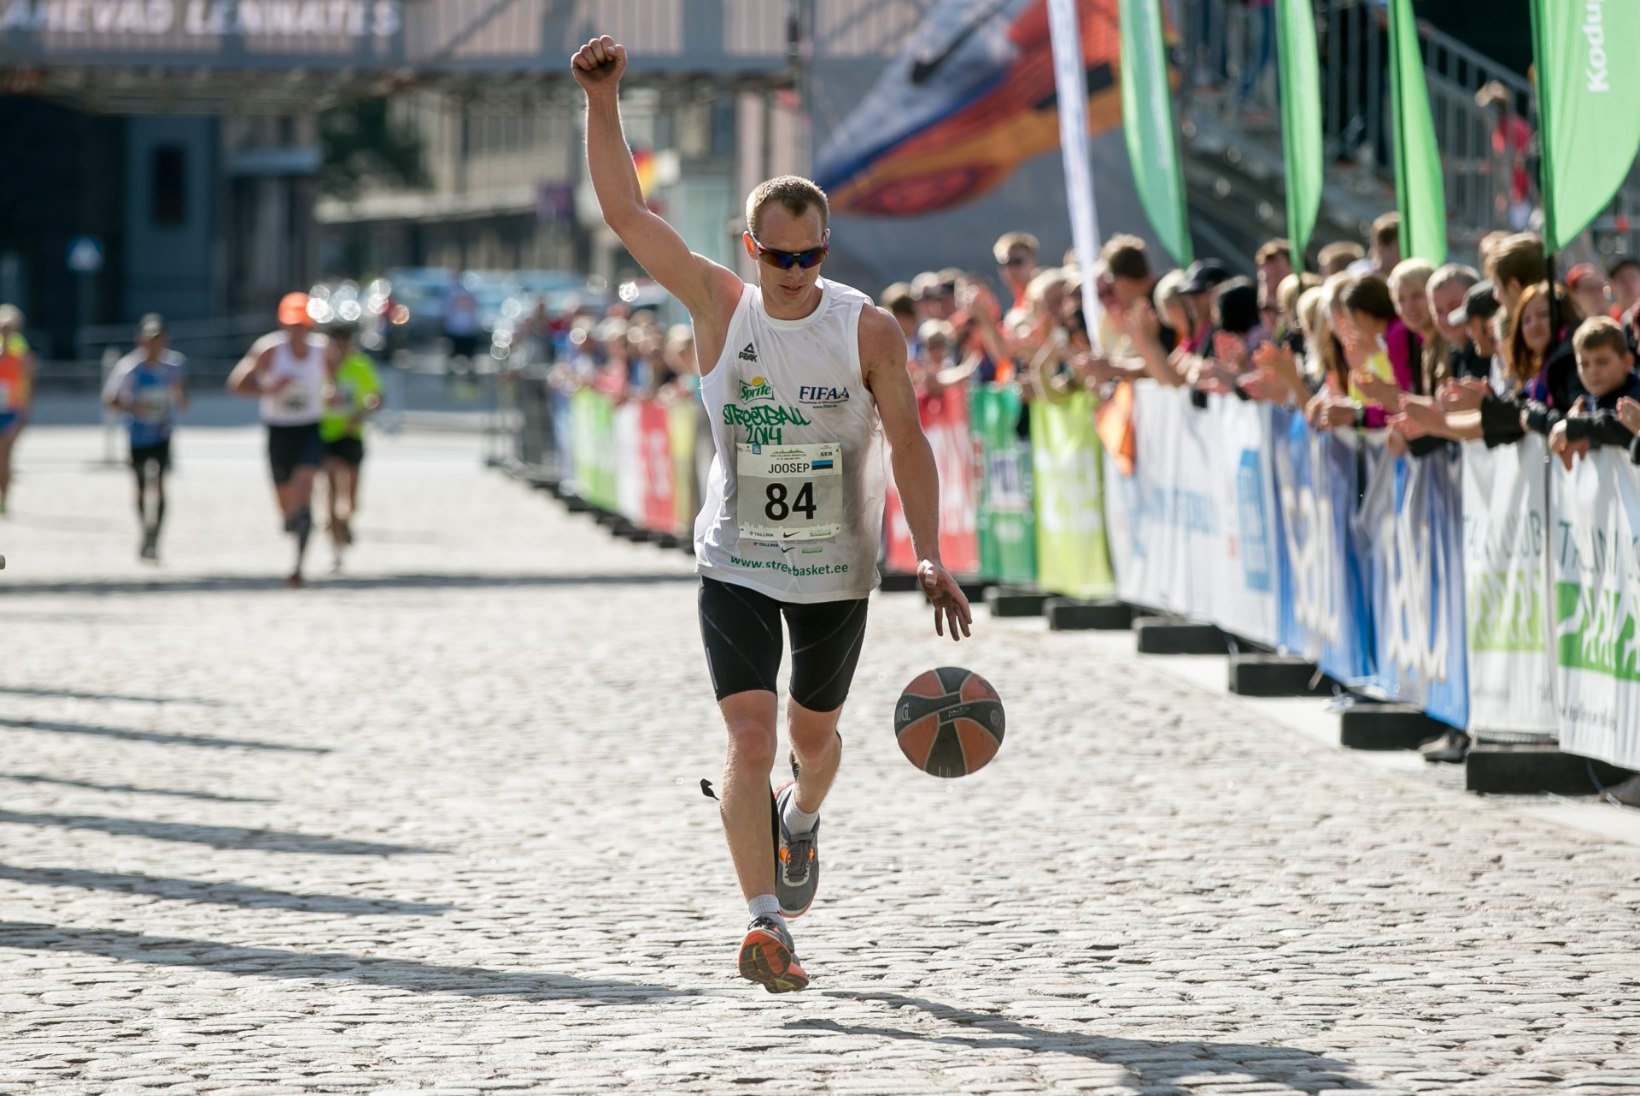 Palli põrgatades maratoni läbinud eestlane sai Guinnessi rekordite raamatusse